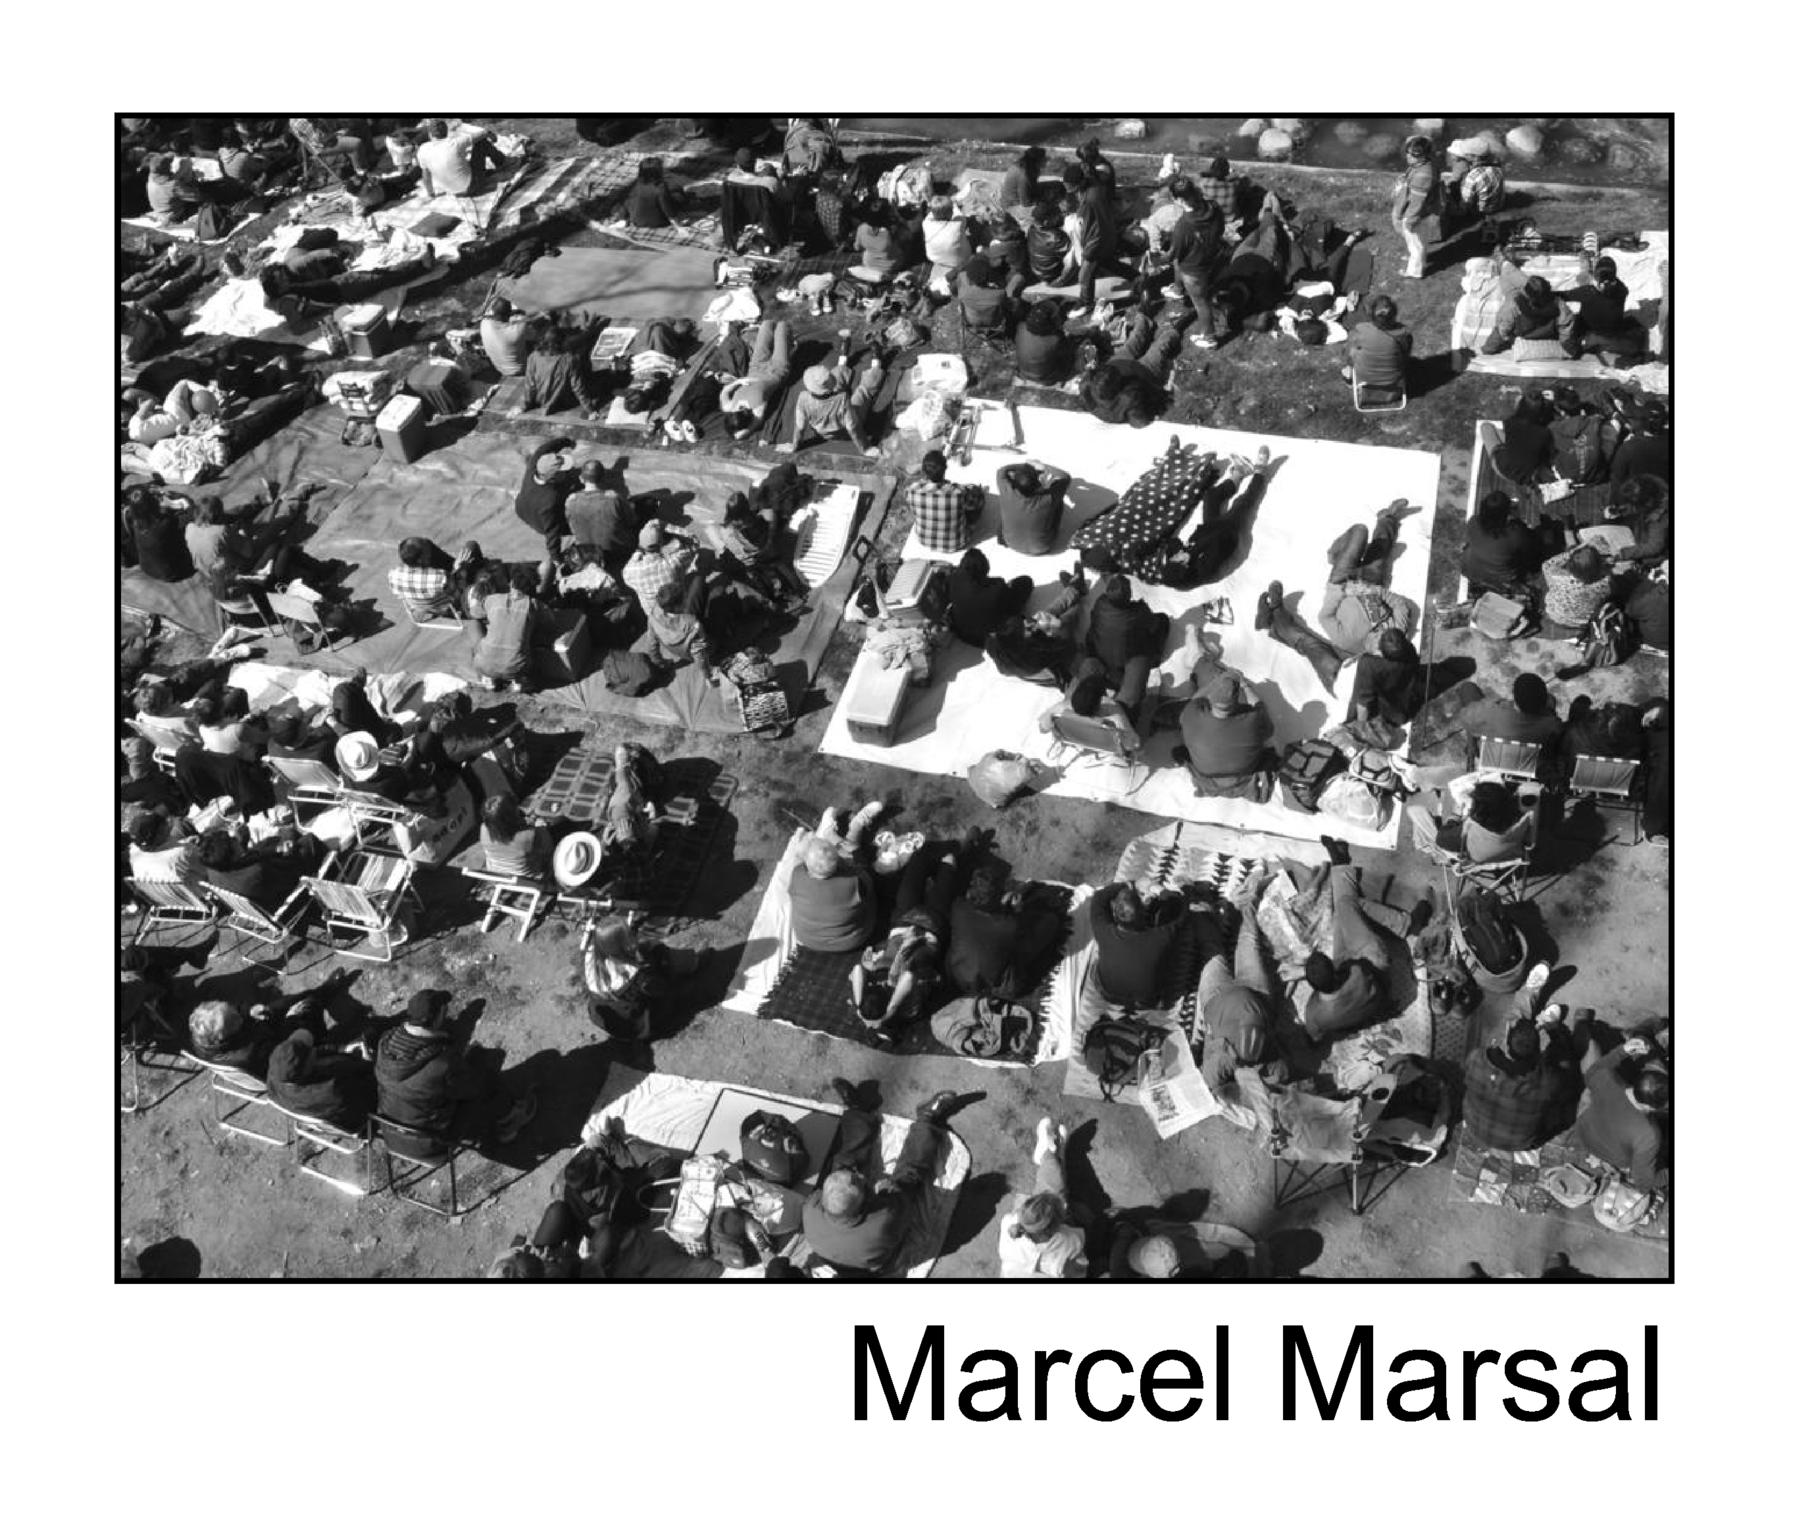  Marcel Marsal